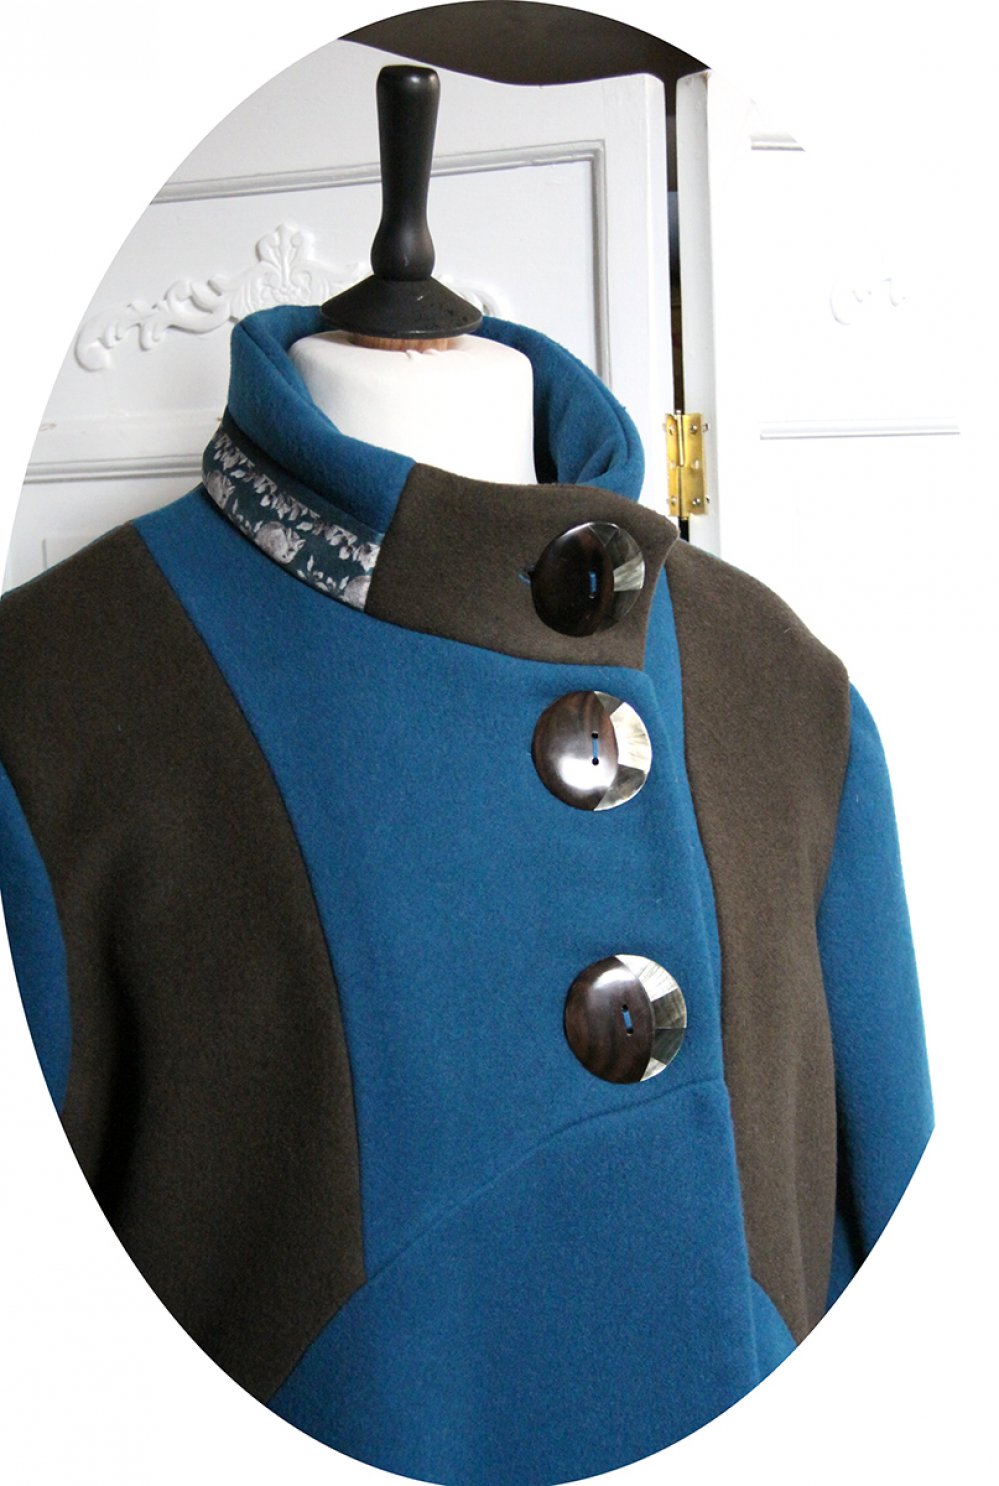 Manteau Spencer de forme trapèze en velours de laine bleu canard et motif renard roux--9996061491073